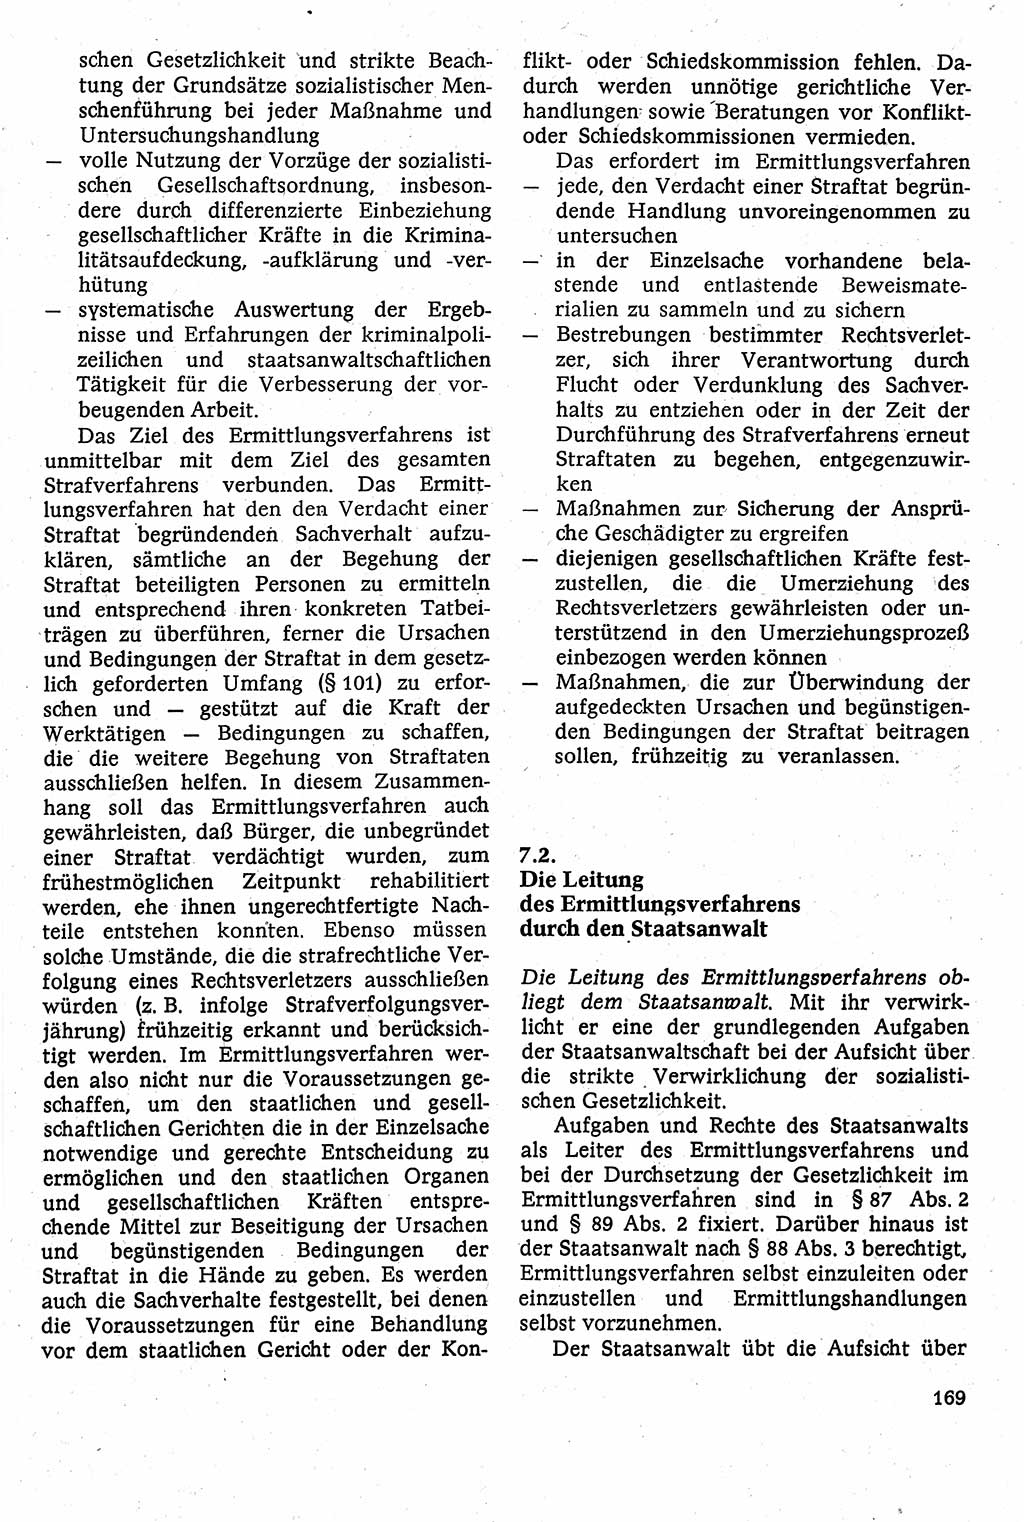 Strafverfahrensrecht [Deutsche Demokratische Republik (DDR)], Lehrbuch 1982, Seite 169 (Strafverf.-R. DDR Lb. 1982, S. 169)